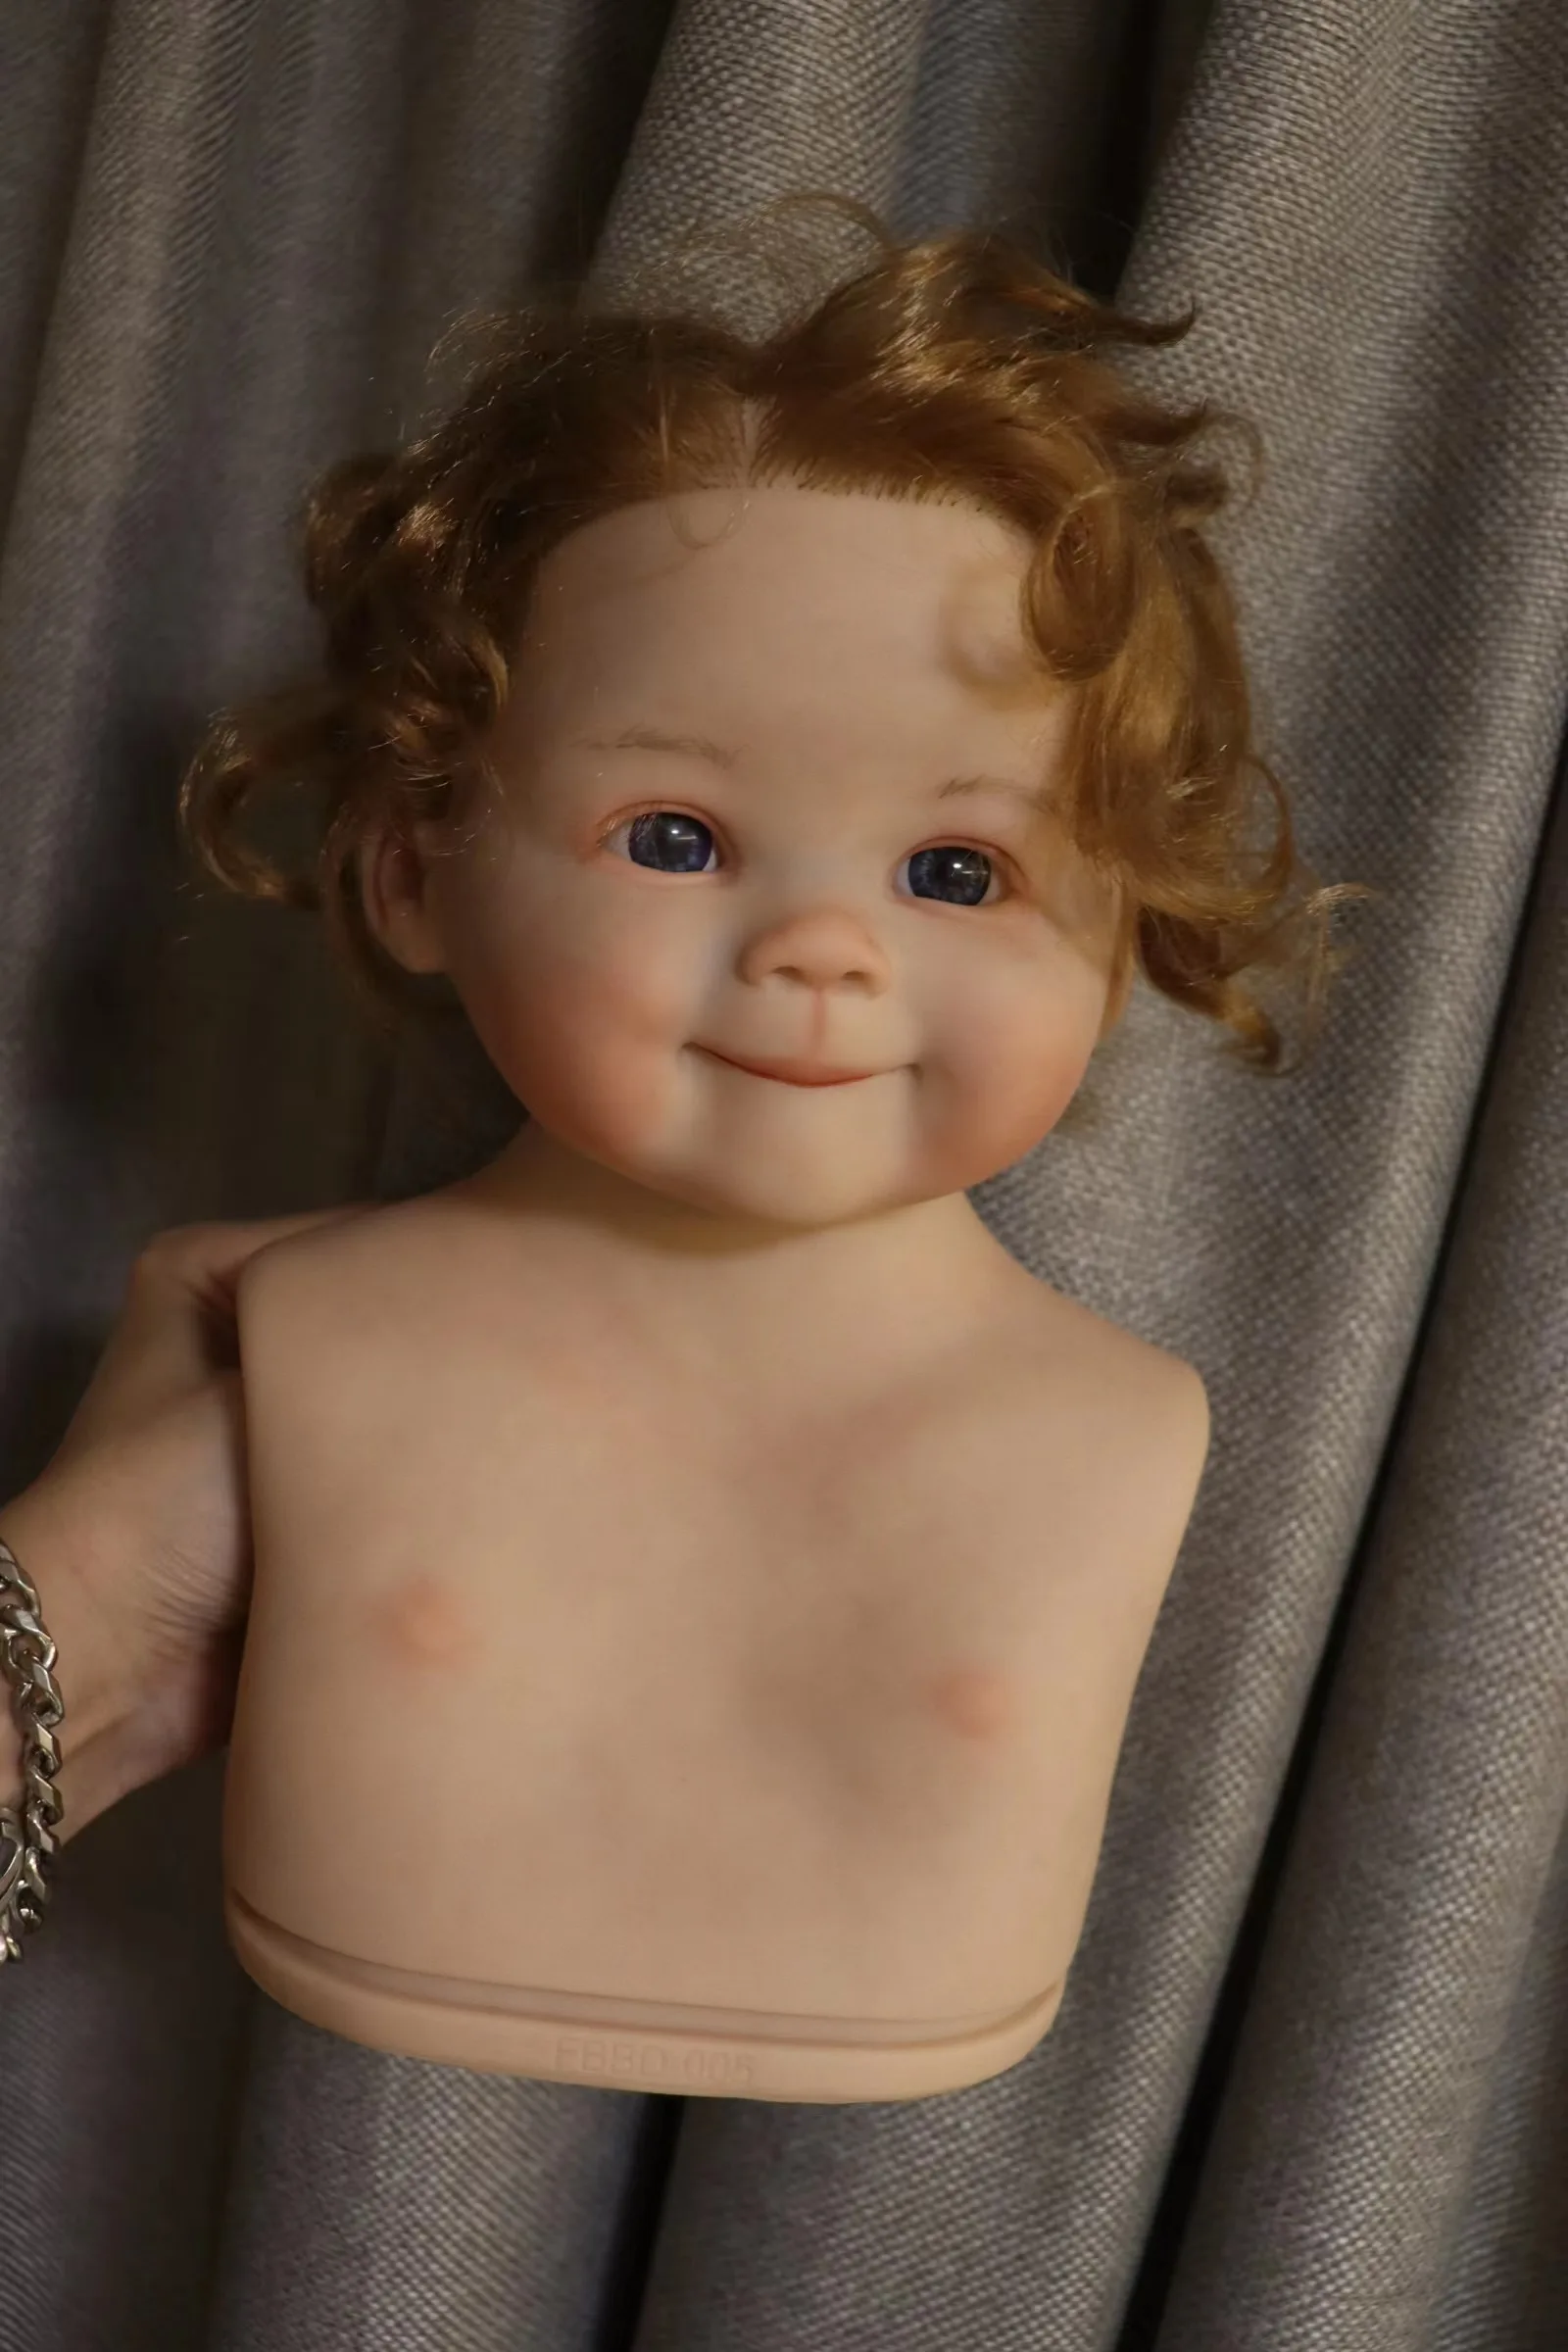 FBBD אמן צייר 28inch התינוק נולד מחדש ליירה לין עם יד מושרש שיער ברורה כלי צעצועים לילדה, בובות לילדים - 2